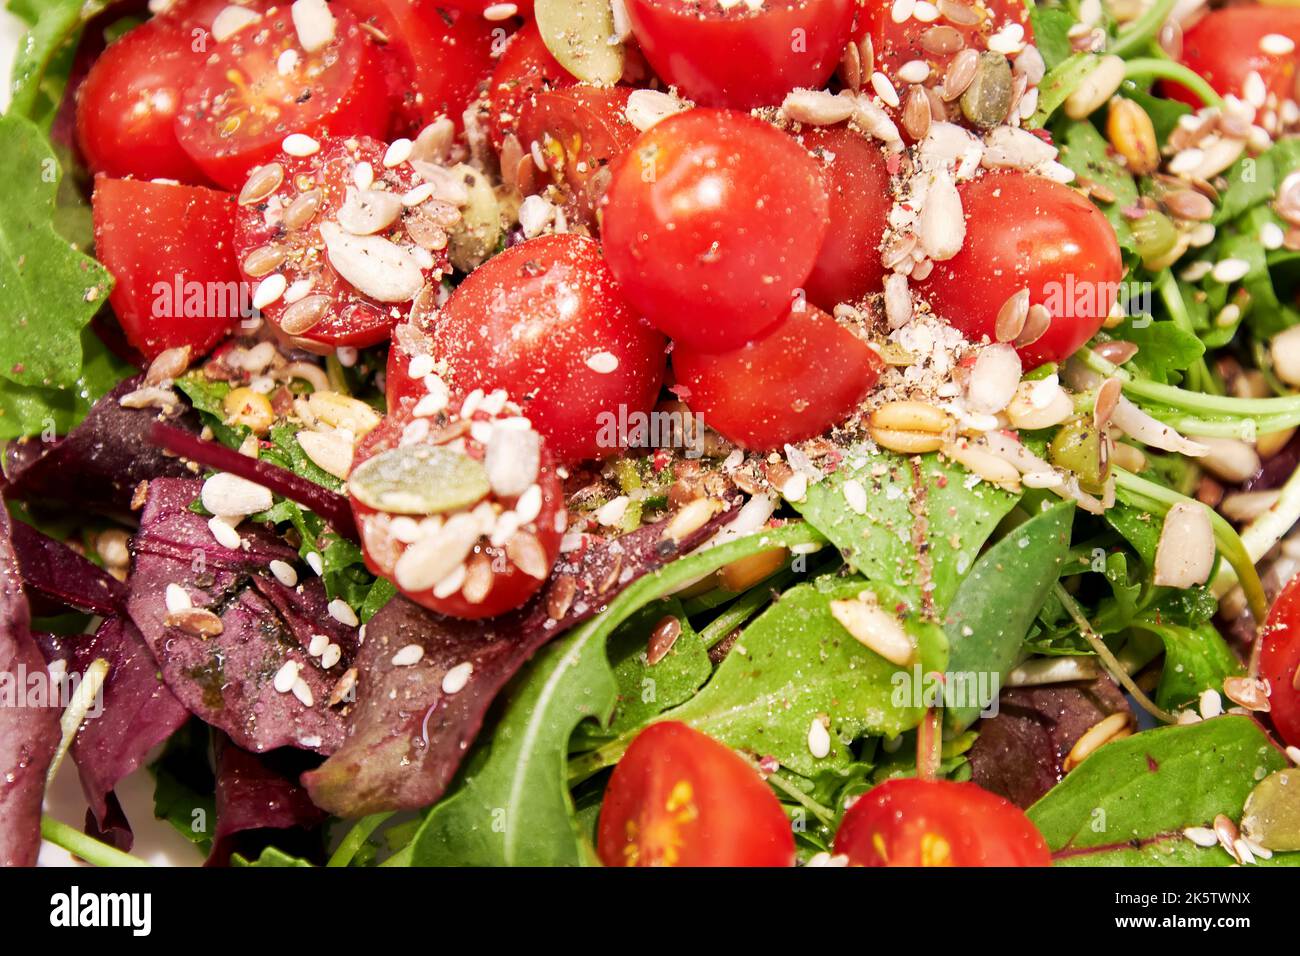 Insalata di verdure con pomodori, lattuga verde, semi e olio. Texture di fondo del cibo Foto Stock